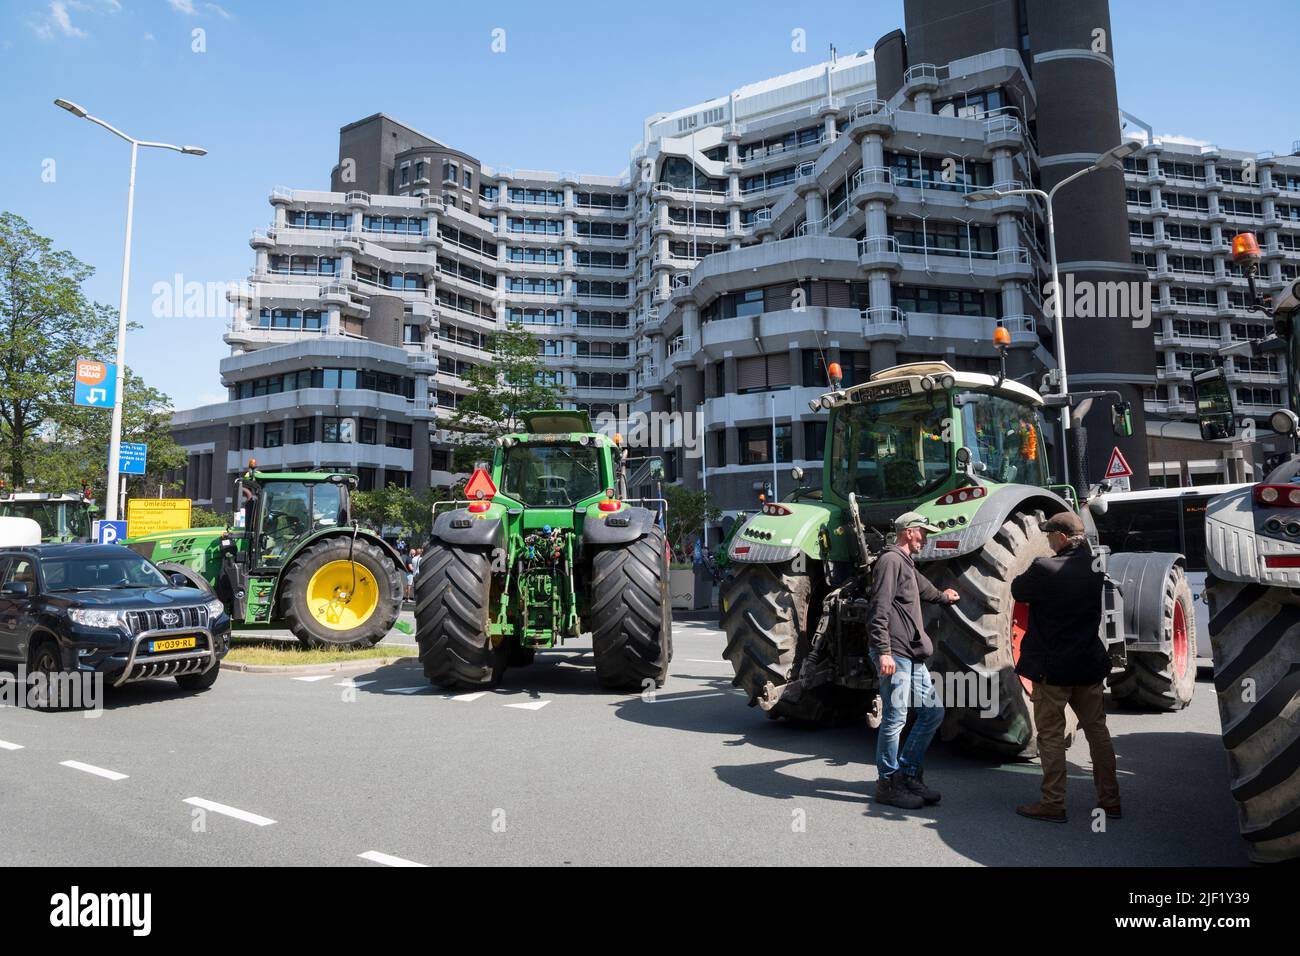 28-06-2022 Den Haag, Niederlande.Landwirte protestieren gegen Maßnahmen zur Senkung der Stickstoffemissionen. Aufgrund dieser Maßnahmen werden viele Bauern aus dem Geschäft genommen.Nachdem die Bauern gegangen waren, marschierten andere Demonstranten in die Stadt, wurden aber von der Polizei eingekistelt und einige Festnahmen wurden vorgenommen. Stockfoto